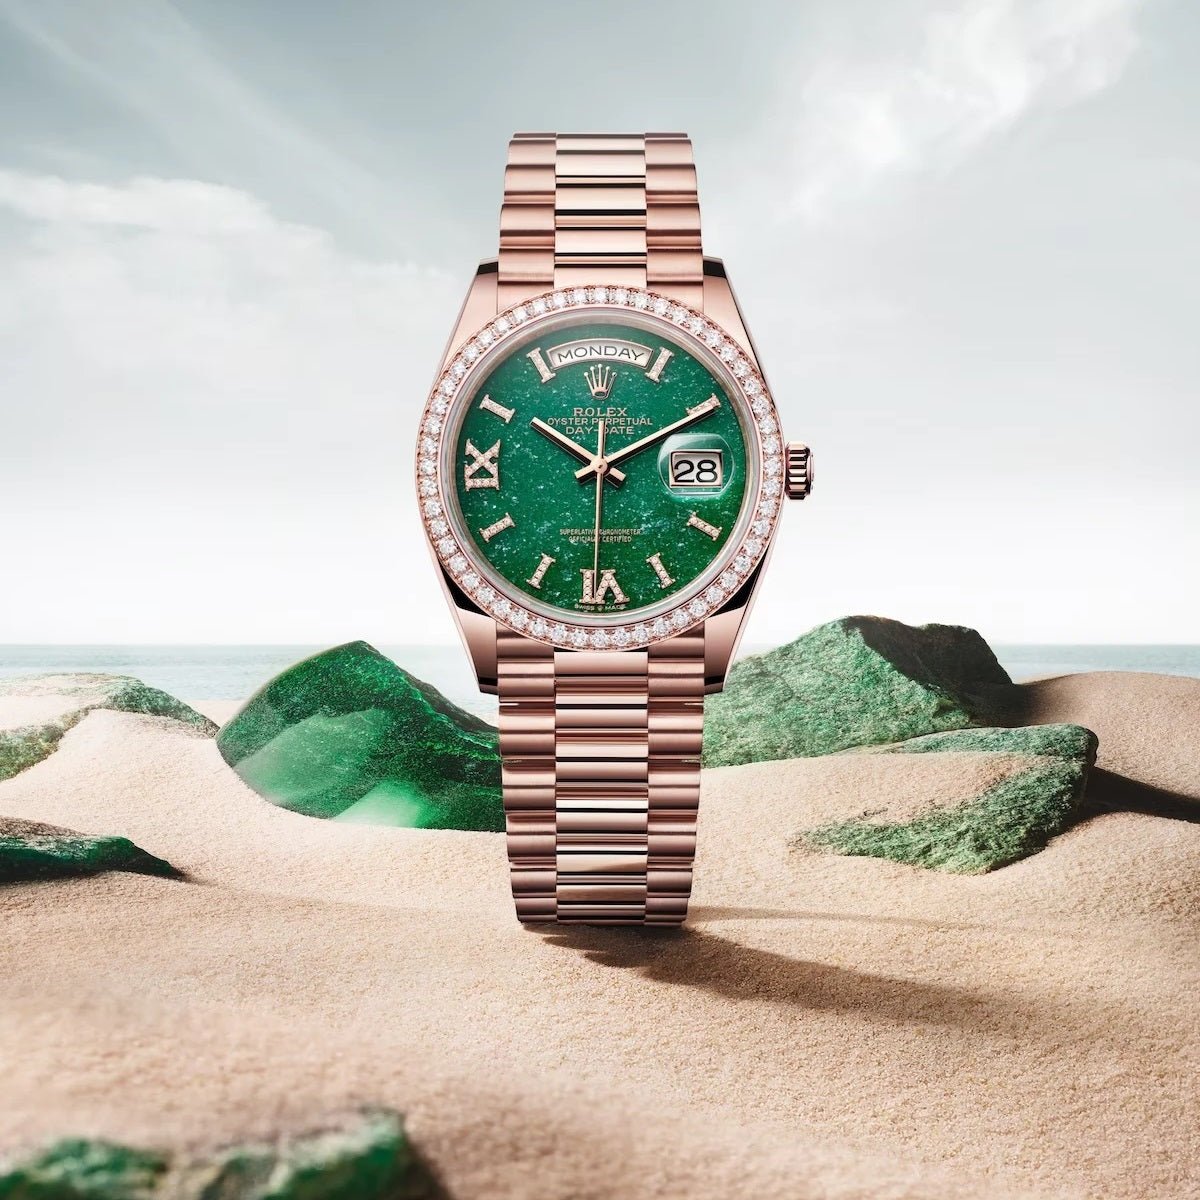 New Rolex Day-Date 36 Ref 128345RBR Green Aventurine Watch, 43% OFF